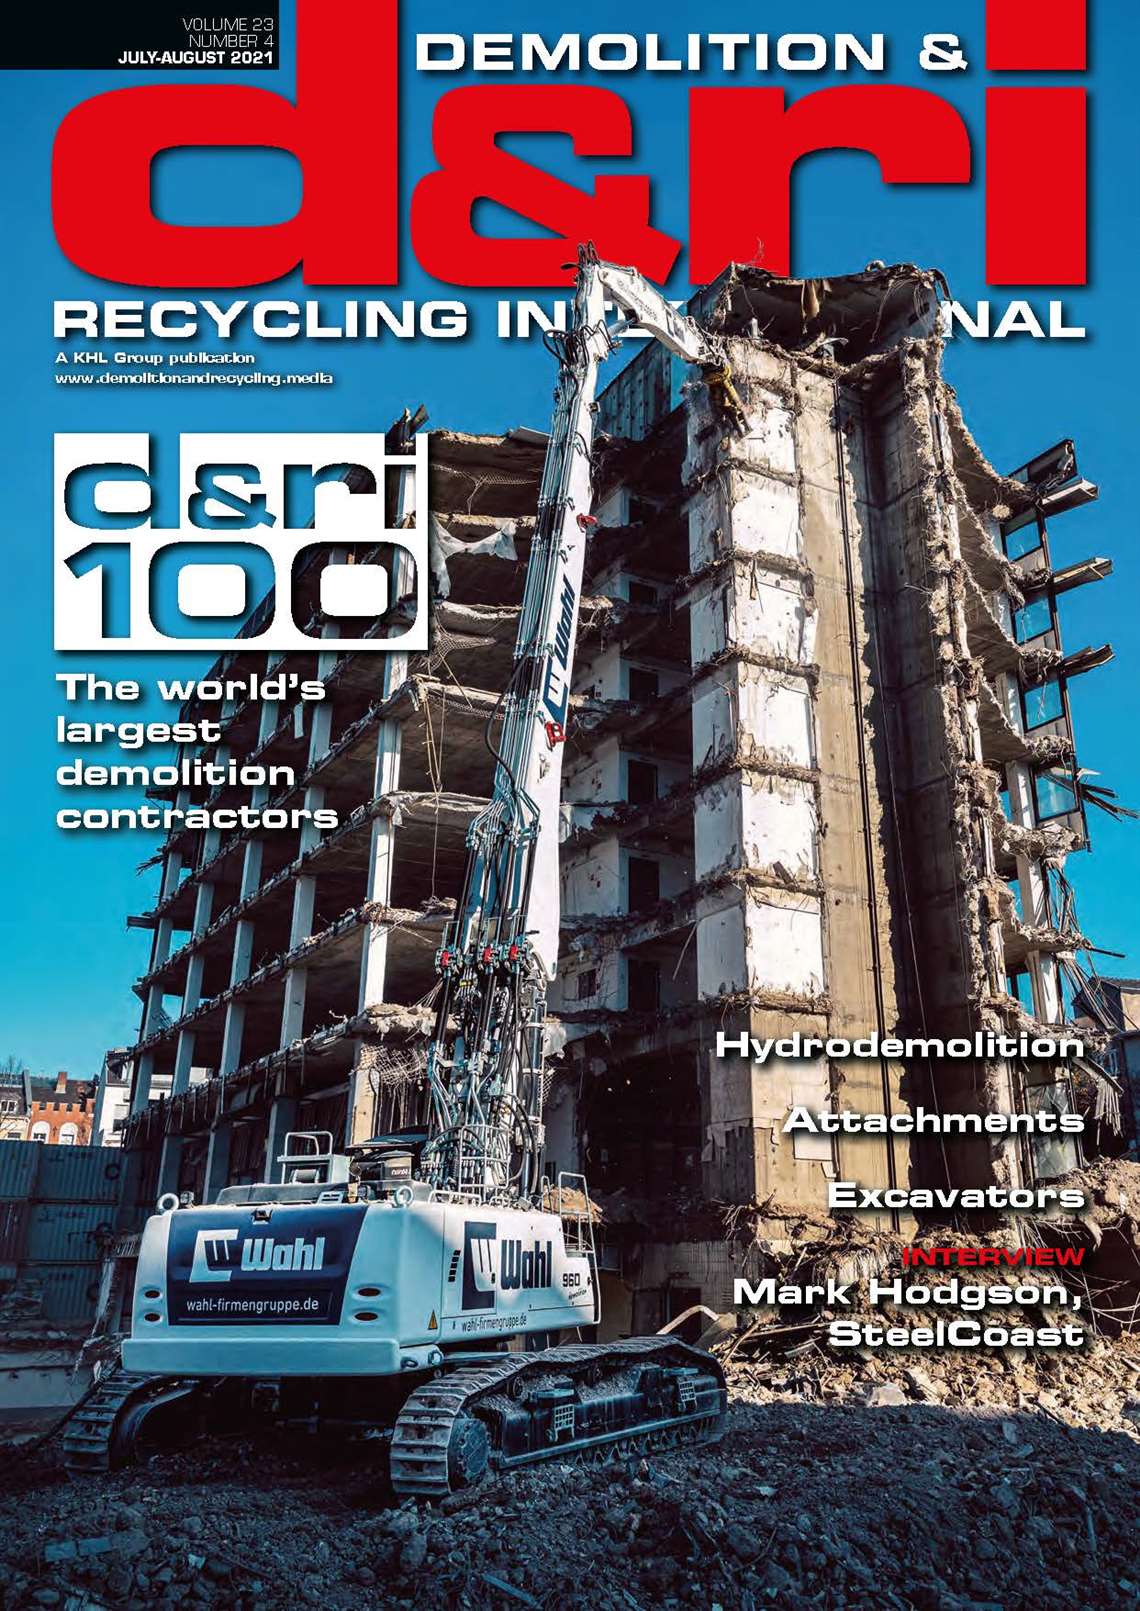 EL TOPIC DE LAS PORTADAS DE REVISTAS - Página 2 20210713-120729-Demolition--Recycling-International-JulyAug-2021